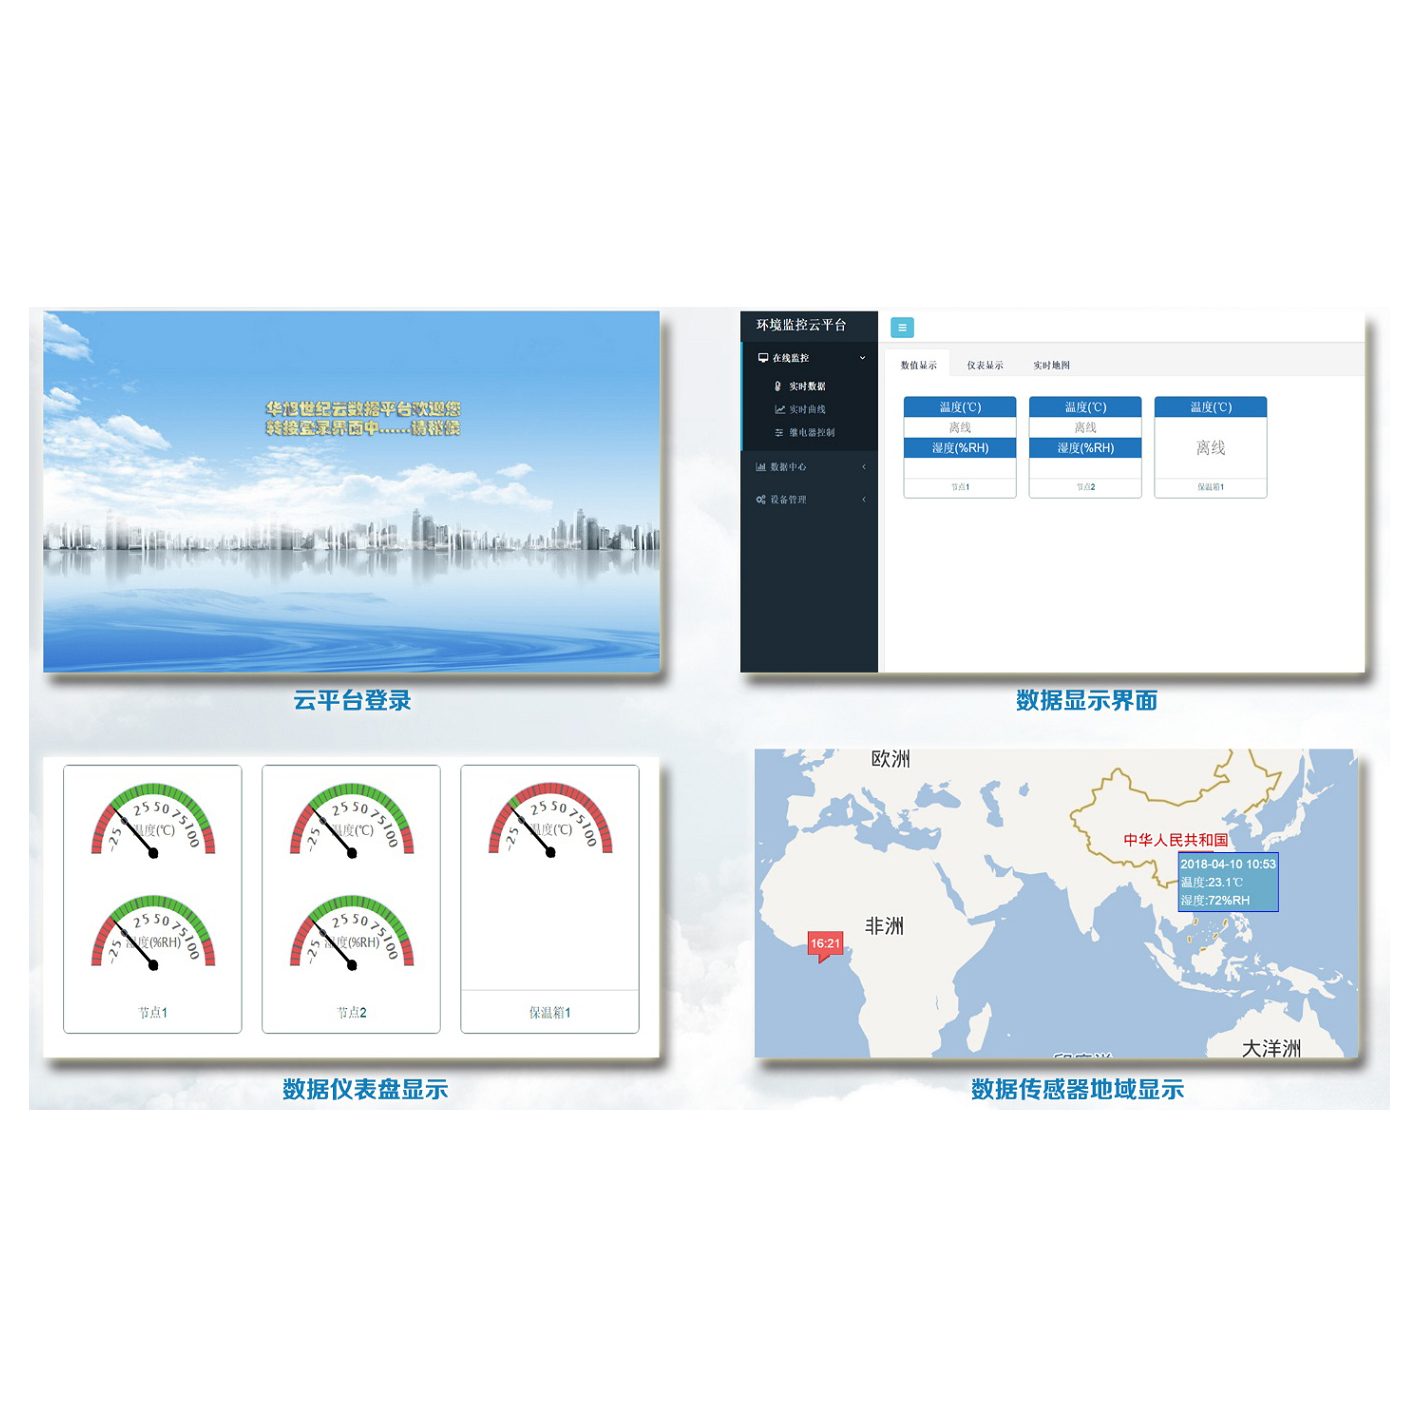 仪器仪表数据远程监控平台-北京华旭世纪RDC系列